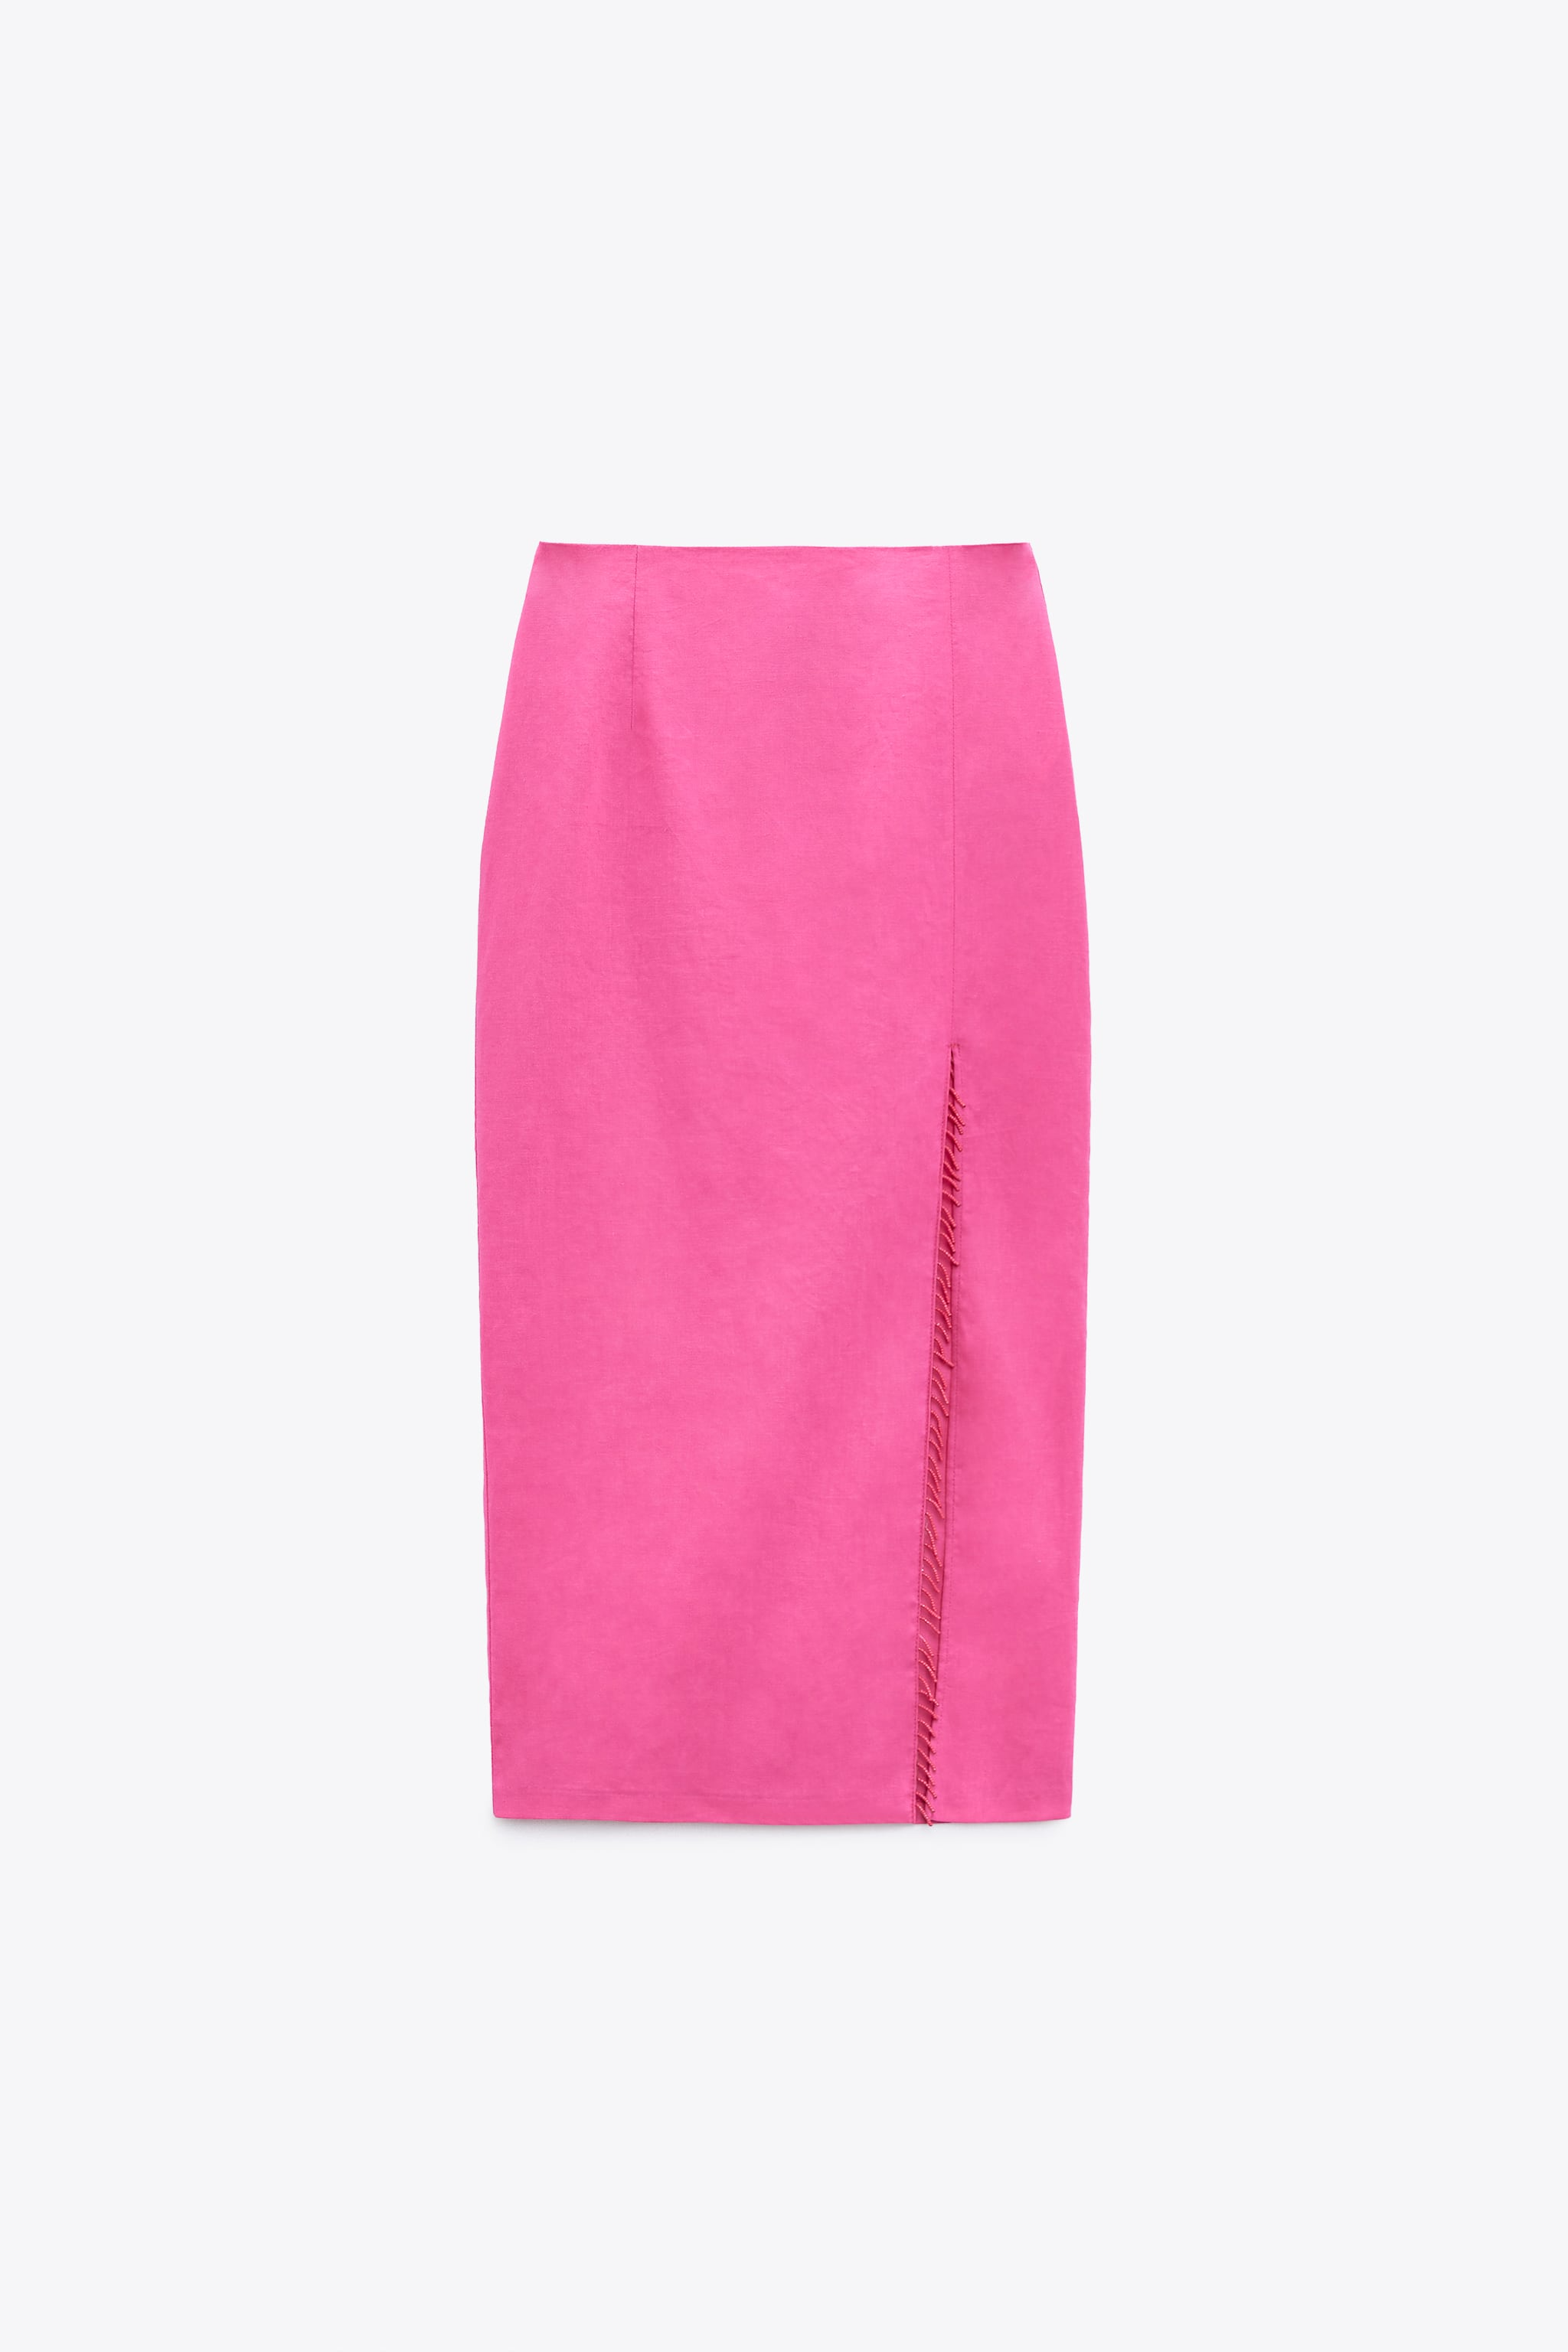 Zara Beaded Linen Blend Midi Skirt €39.95